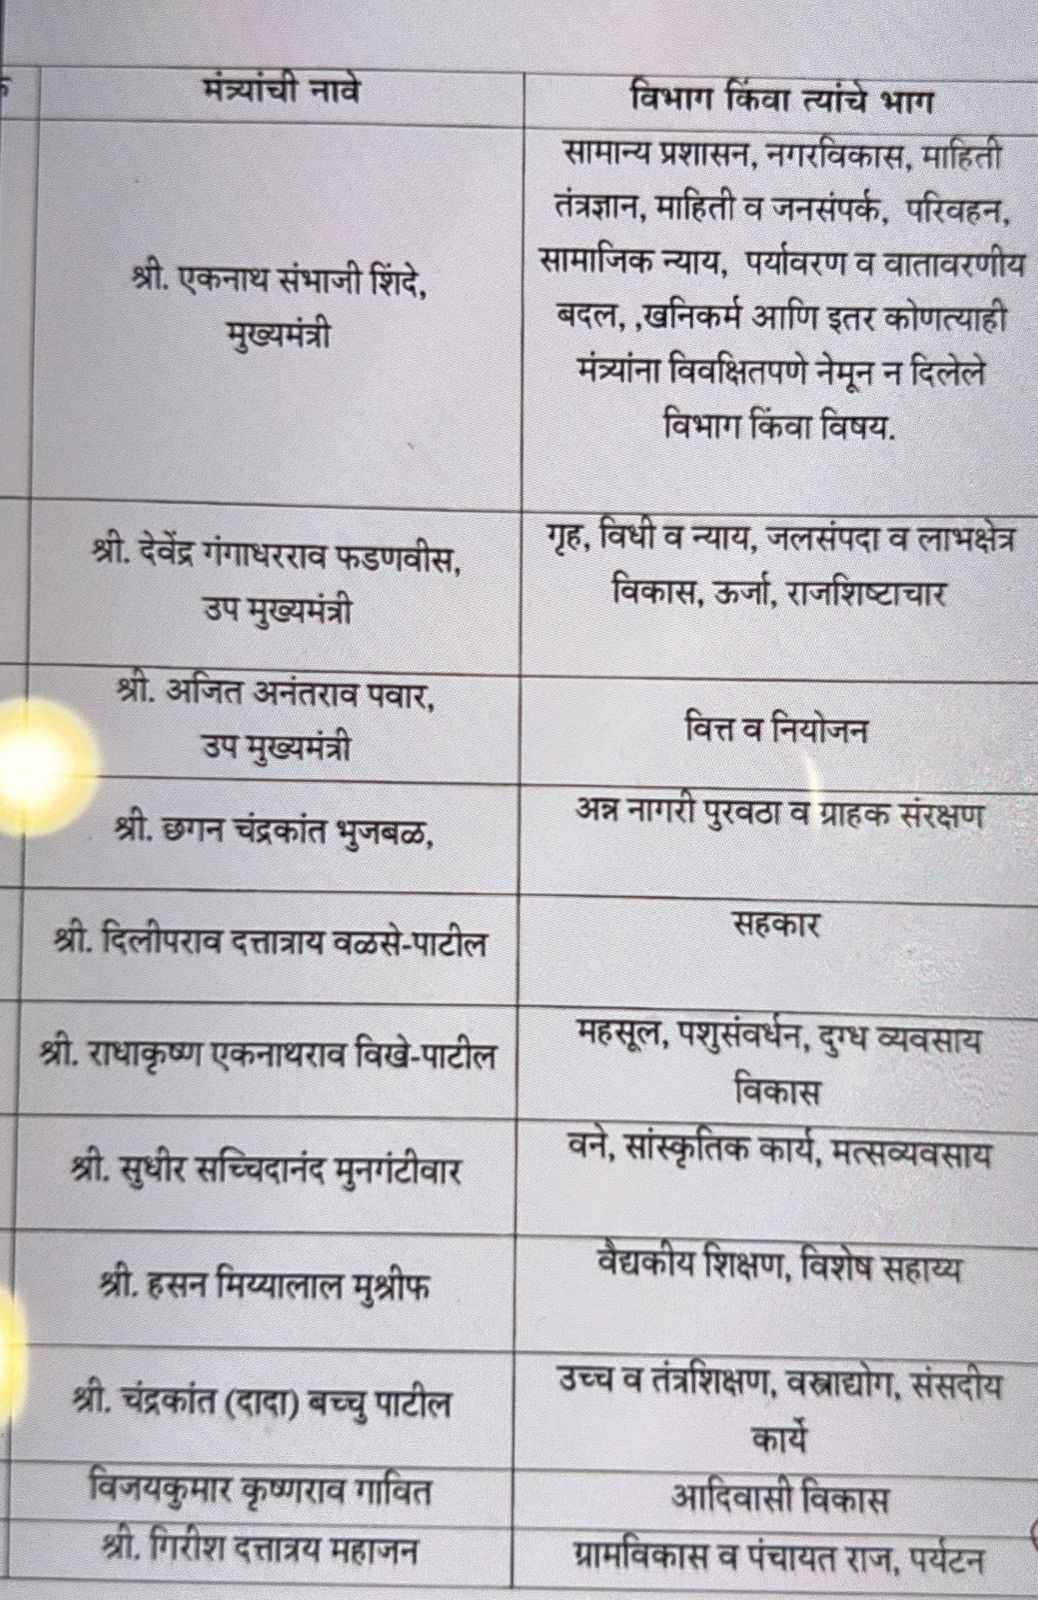 Maharashtra Cabinet Portfolio: सीएम शिंदे ने किया मंत्रियों के विभागों का बंटवारा, अजित पवार को मिला ये मंत्रालय, देखें पूरी लिस्ट